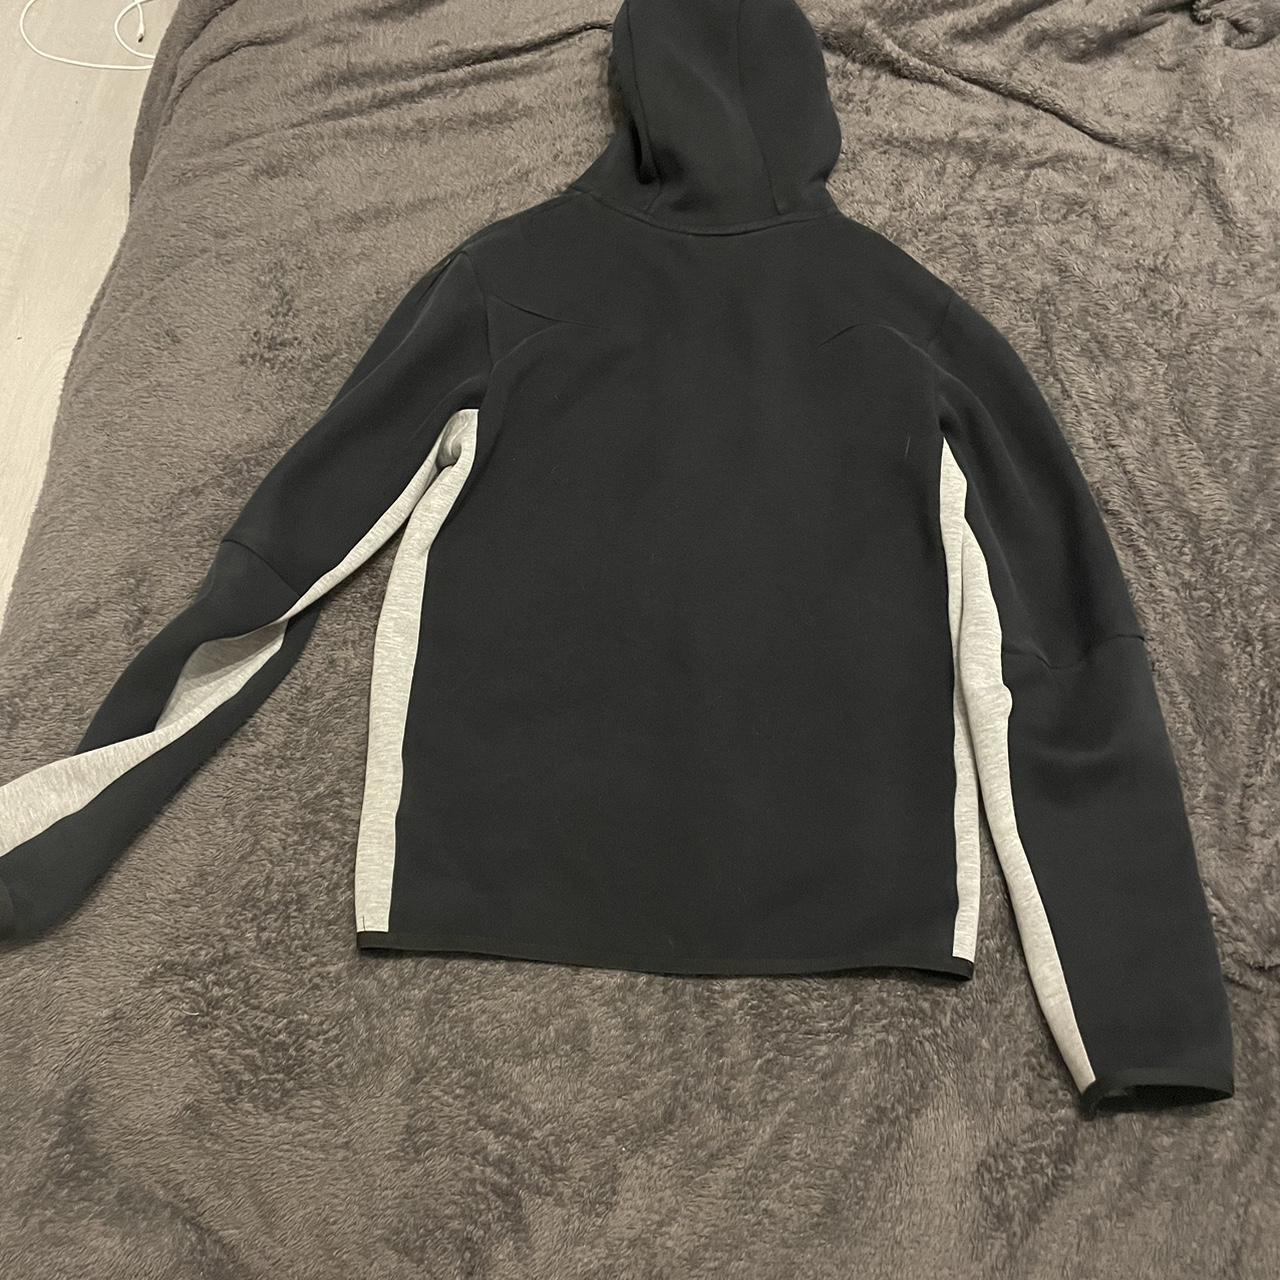 grey and black nike tech fleece zip up jumper - Depop